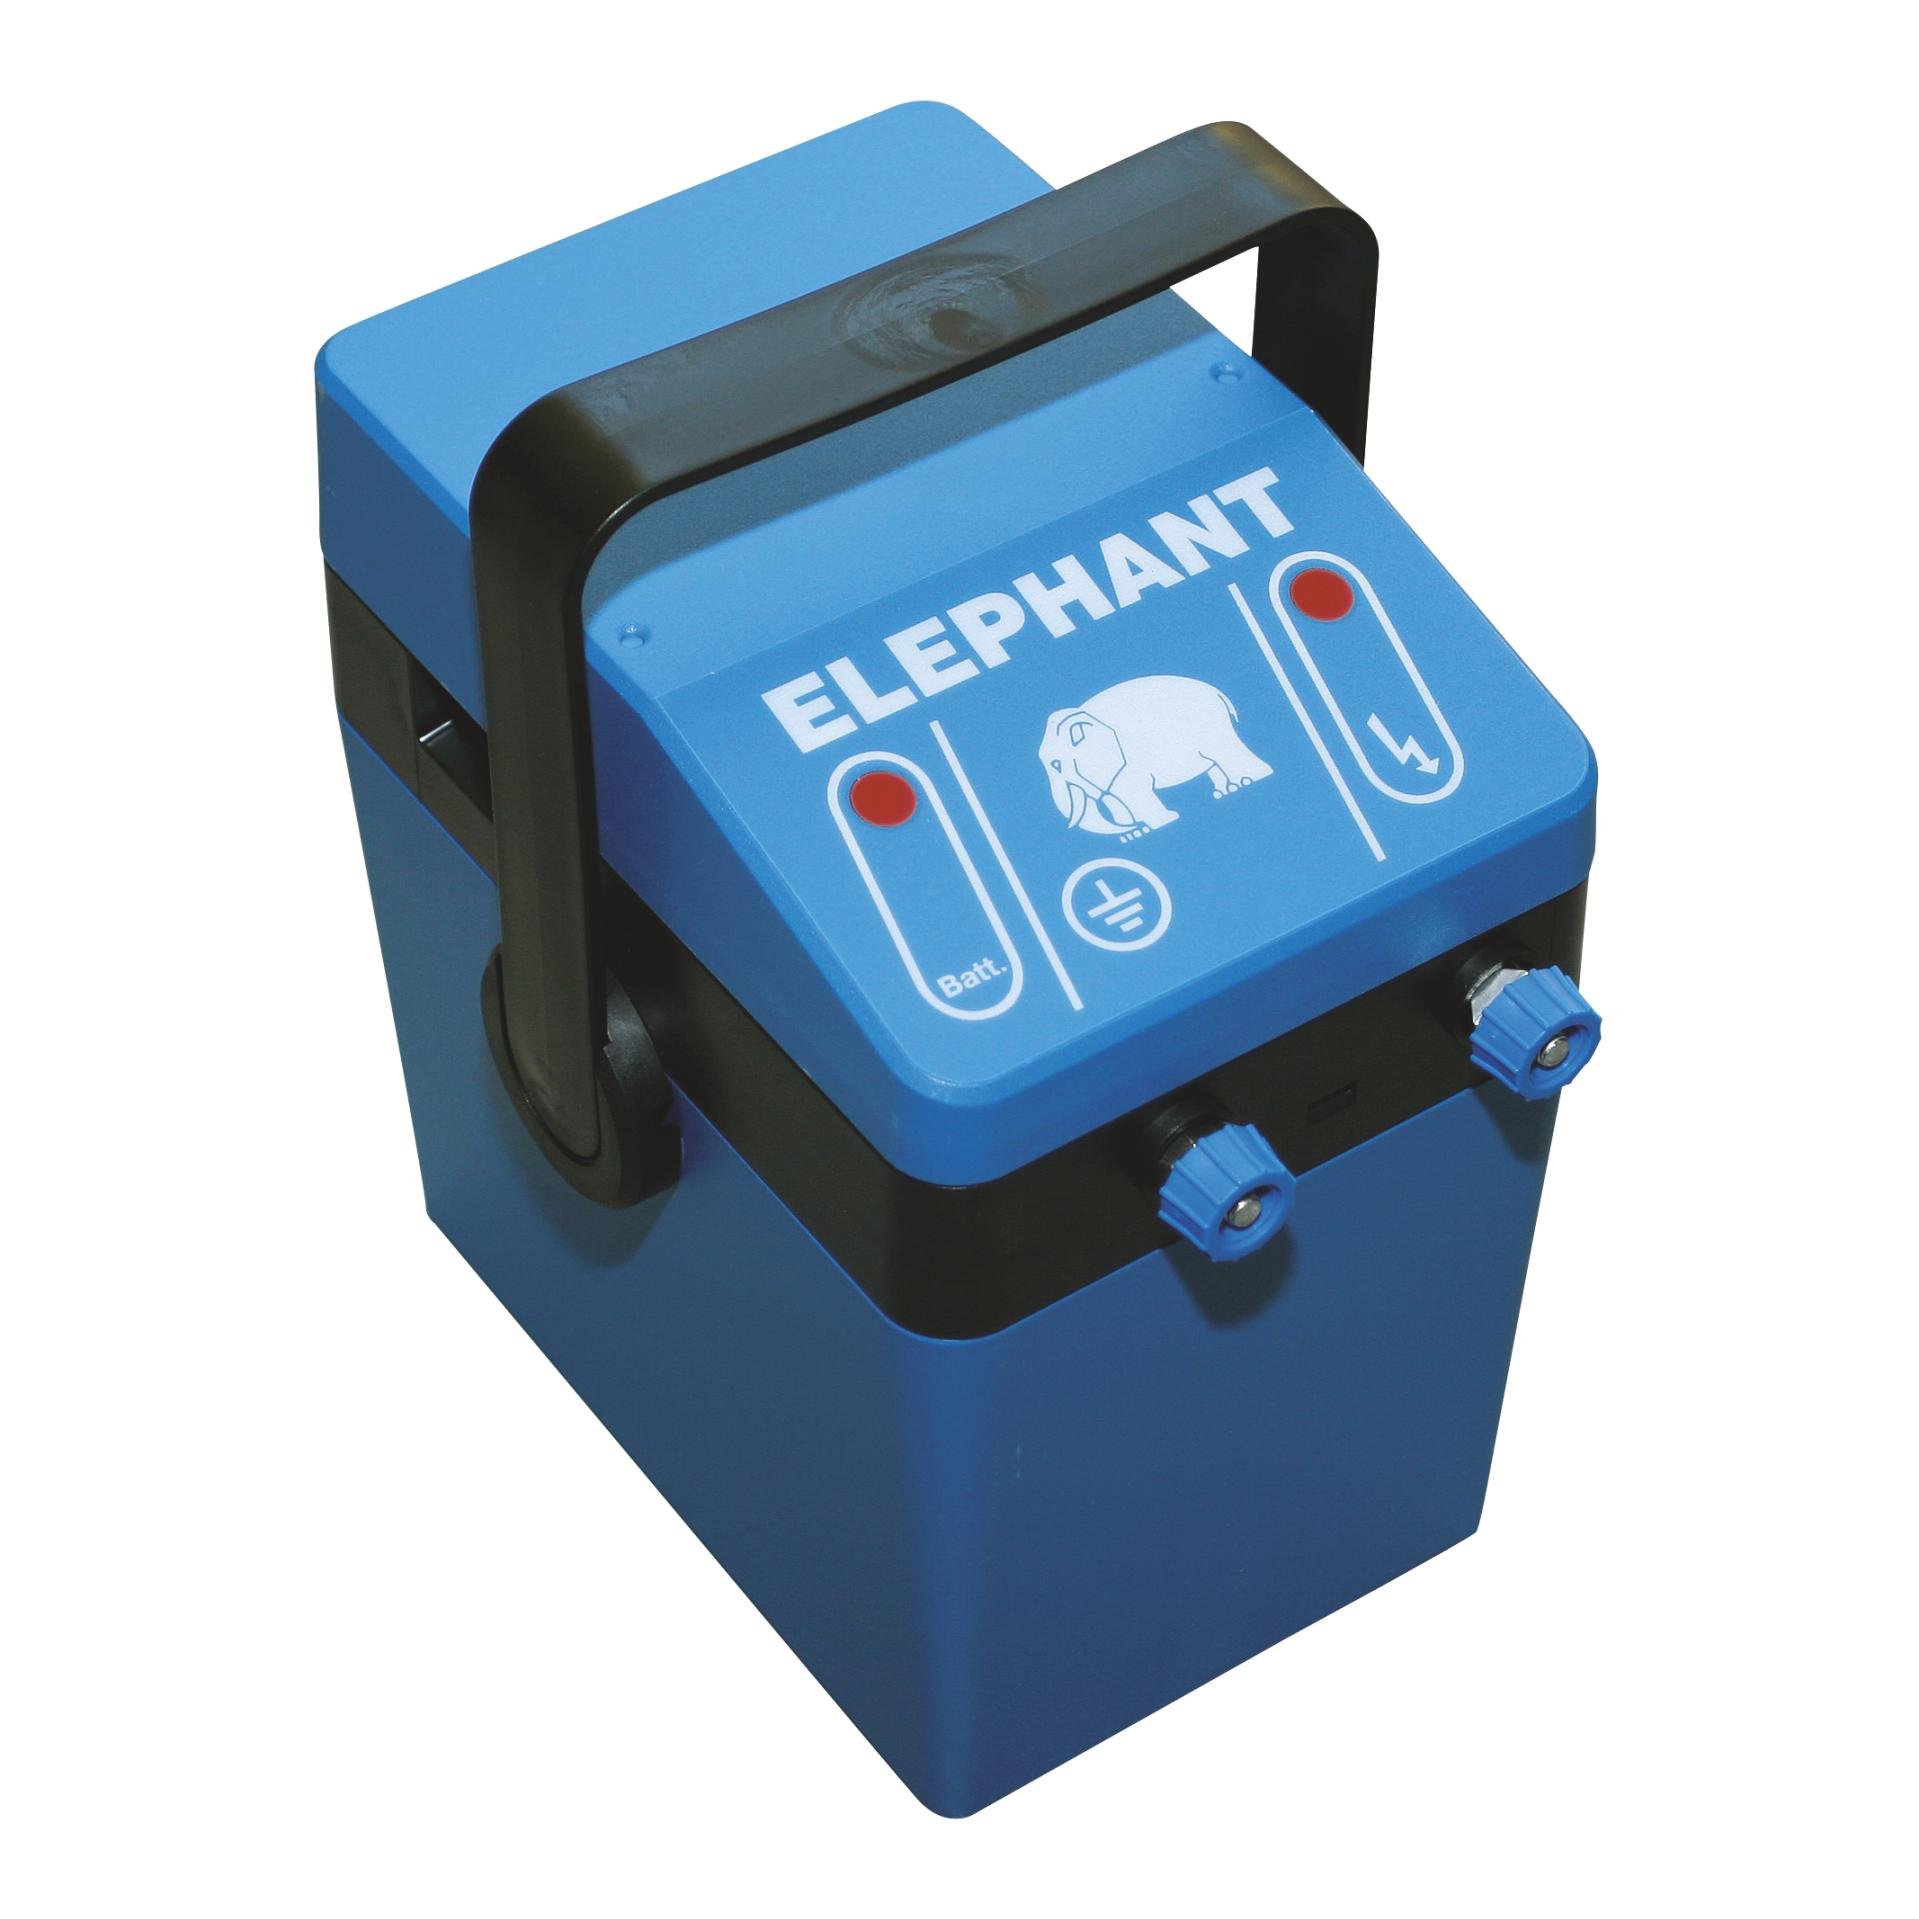 Image of Elephant Batteriegerät Mobil P3 - Blau - bei Hauptner.ch